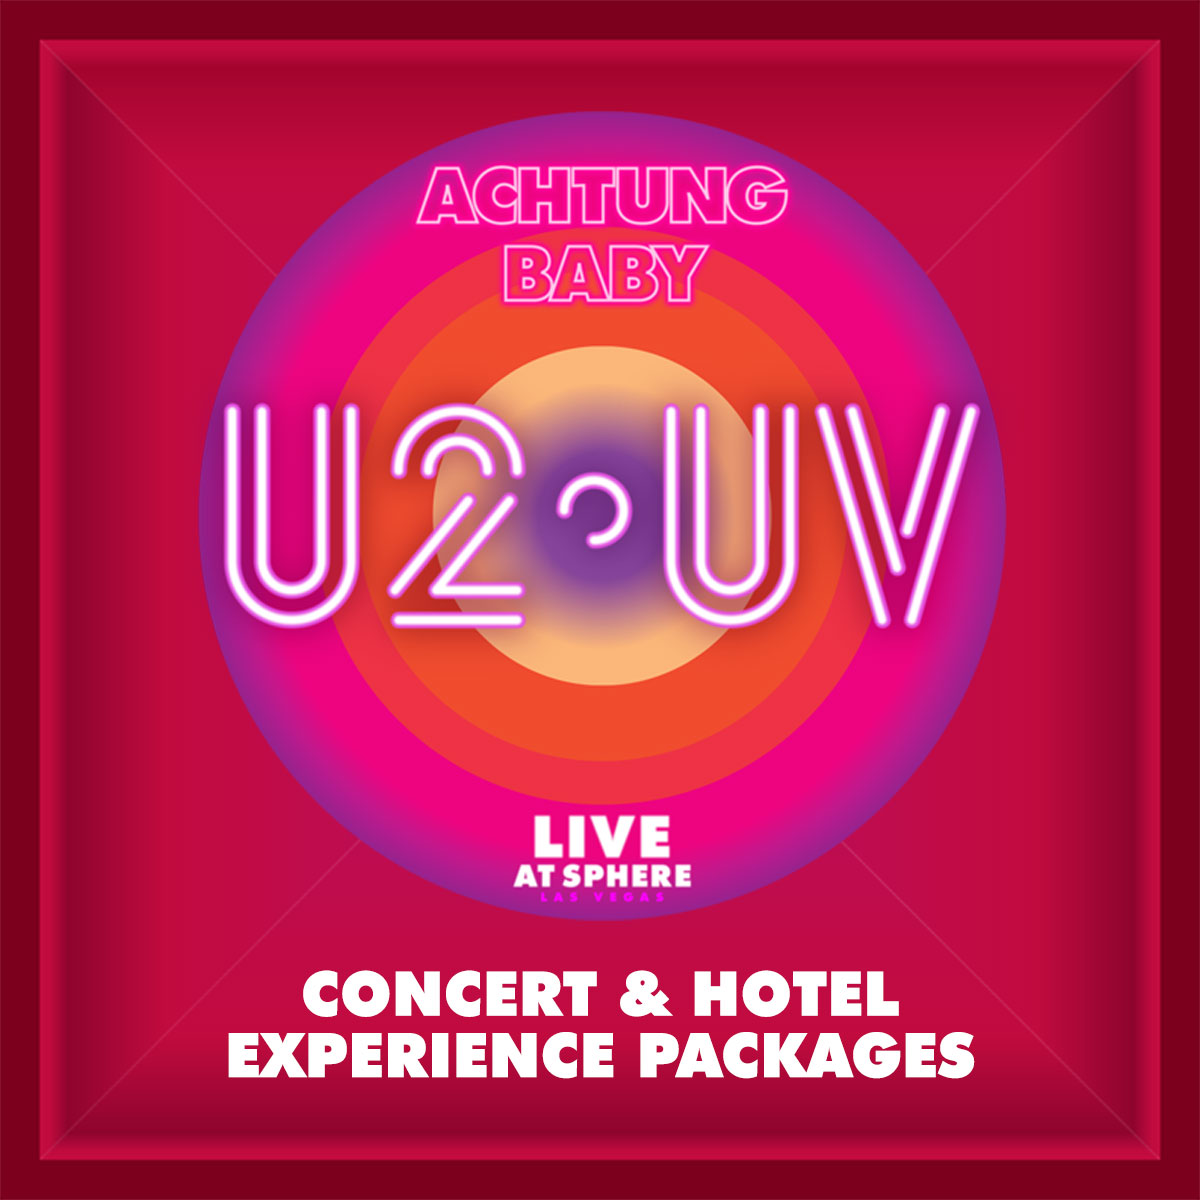 Banner for U2:UV: Concert & Hotel Packages